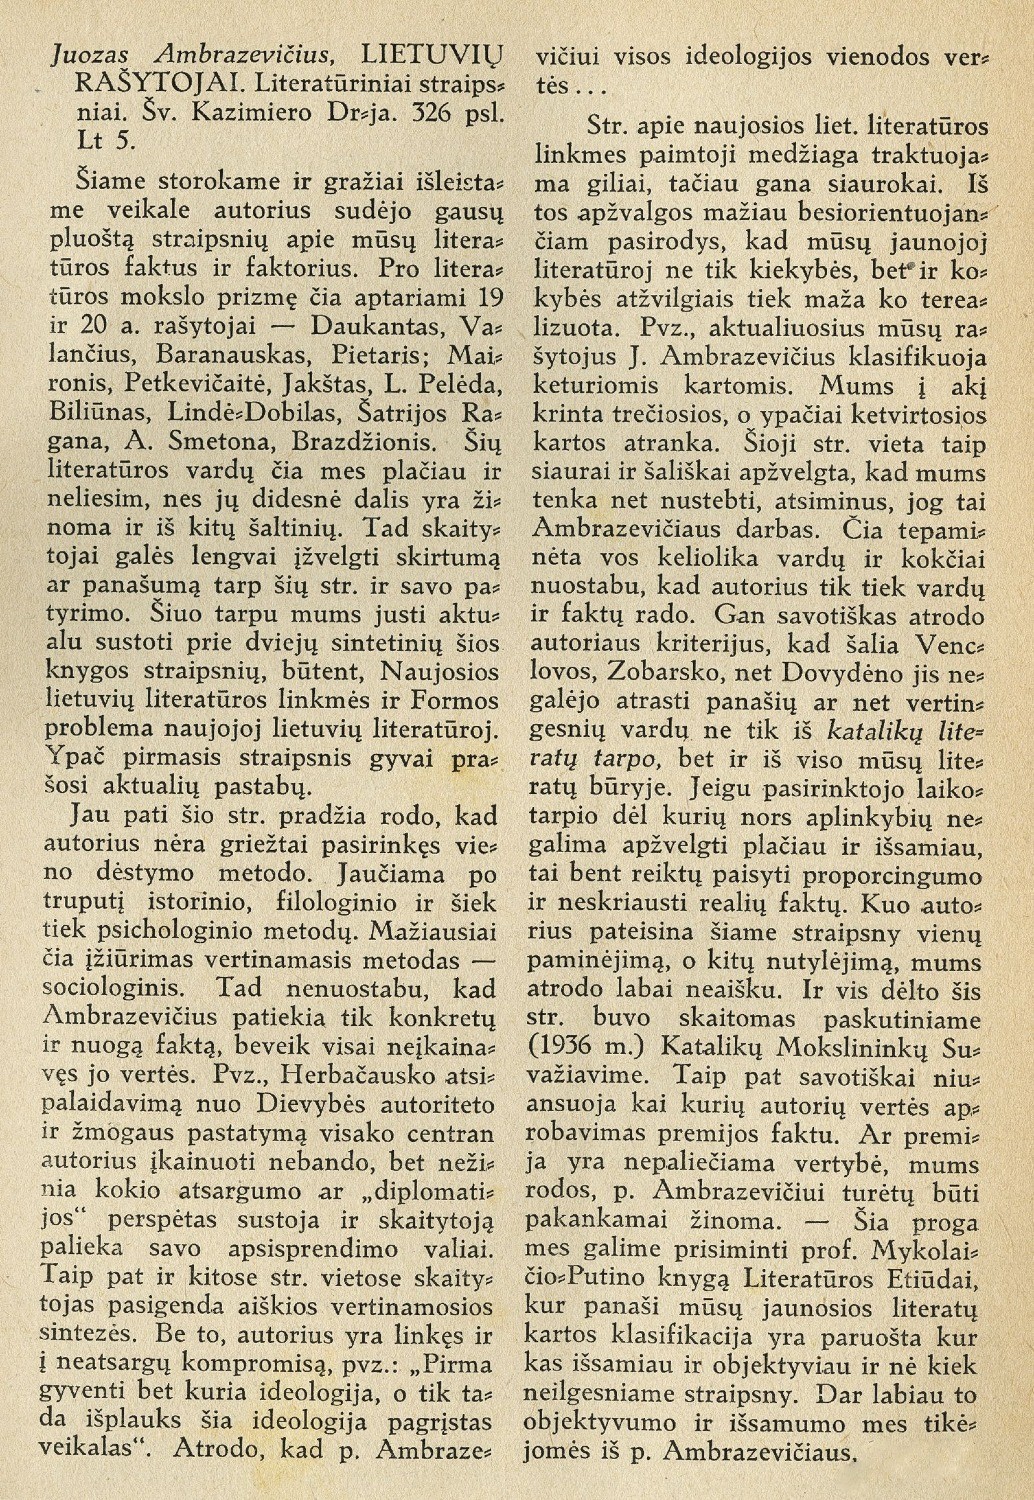 Juozas Ambrazevičius, Lietuvių rašytojai: [rec.] / H. Artis [J. Grabauskas]. – Rec. kn.: Lietuvių rašytojai: literatūriniai straipsniai / Juozas Ambrazevičius; viršelis T. Kulakausko. – Kaunas: Šv. Kazimiero draugija, 1938. – (Šv. Kazimiero dr-jos leid.; Nr. 693) // Draugija. – 1938, Nr. 5/6, p. 183–184.